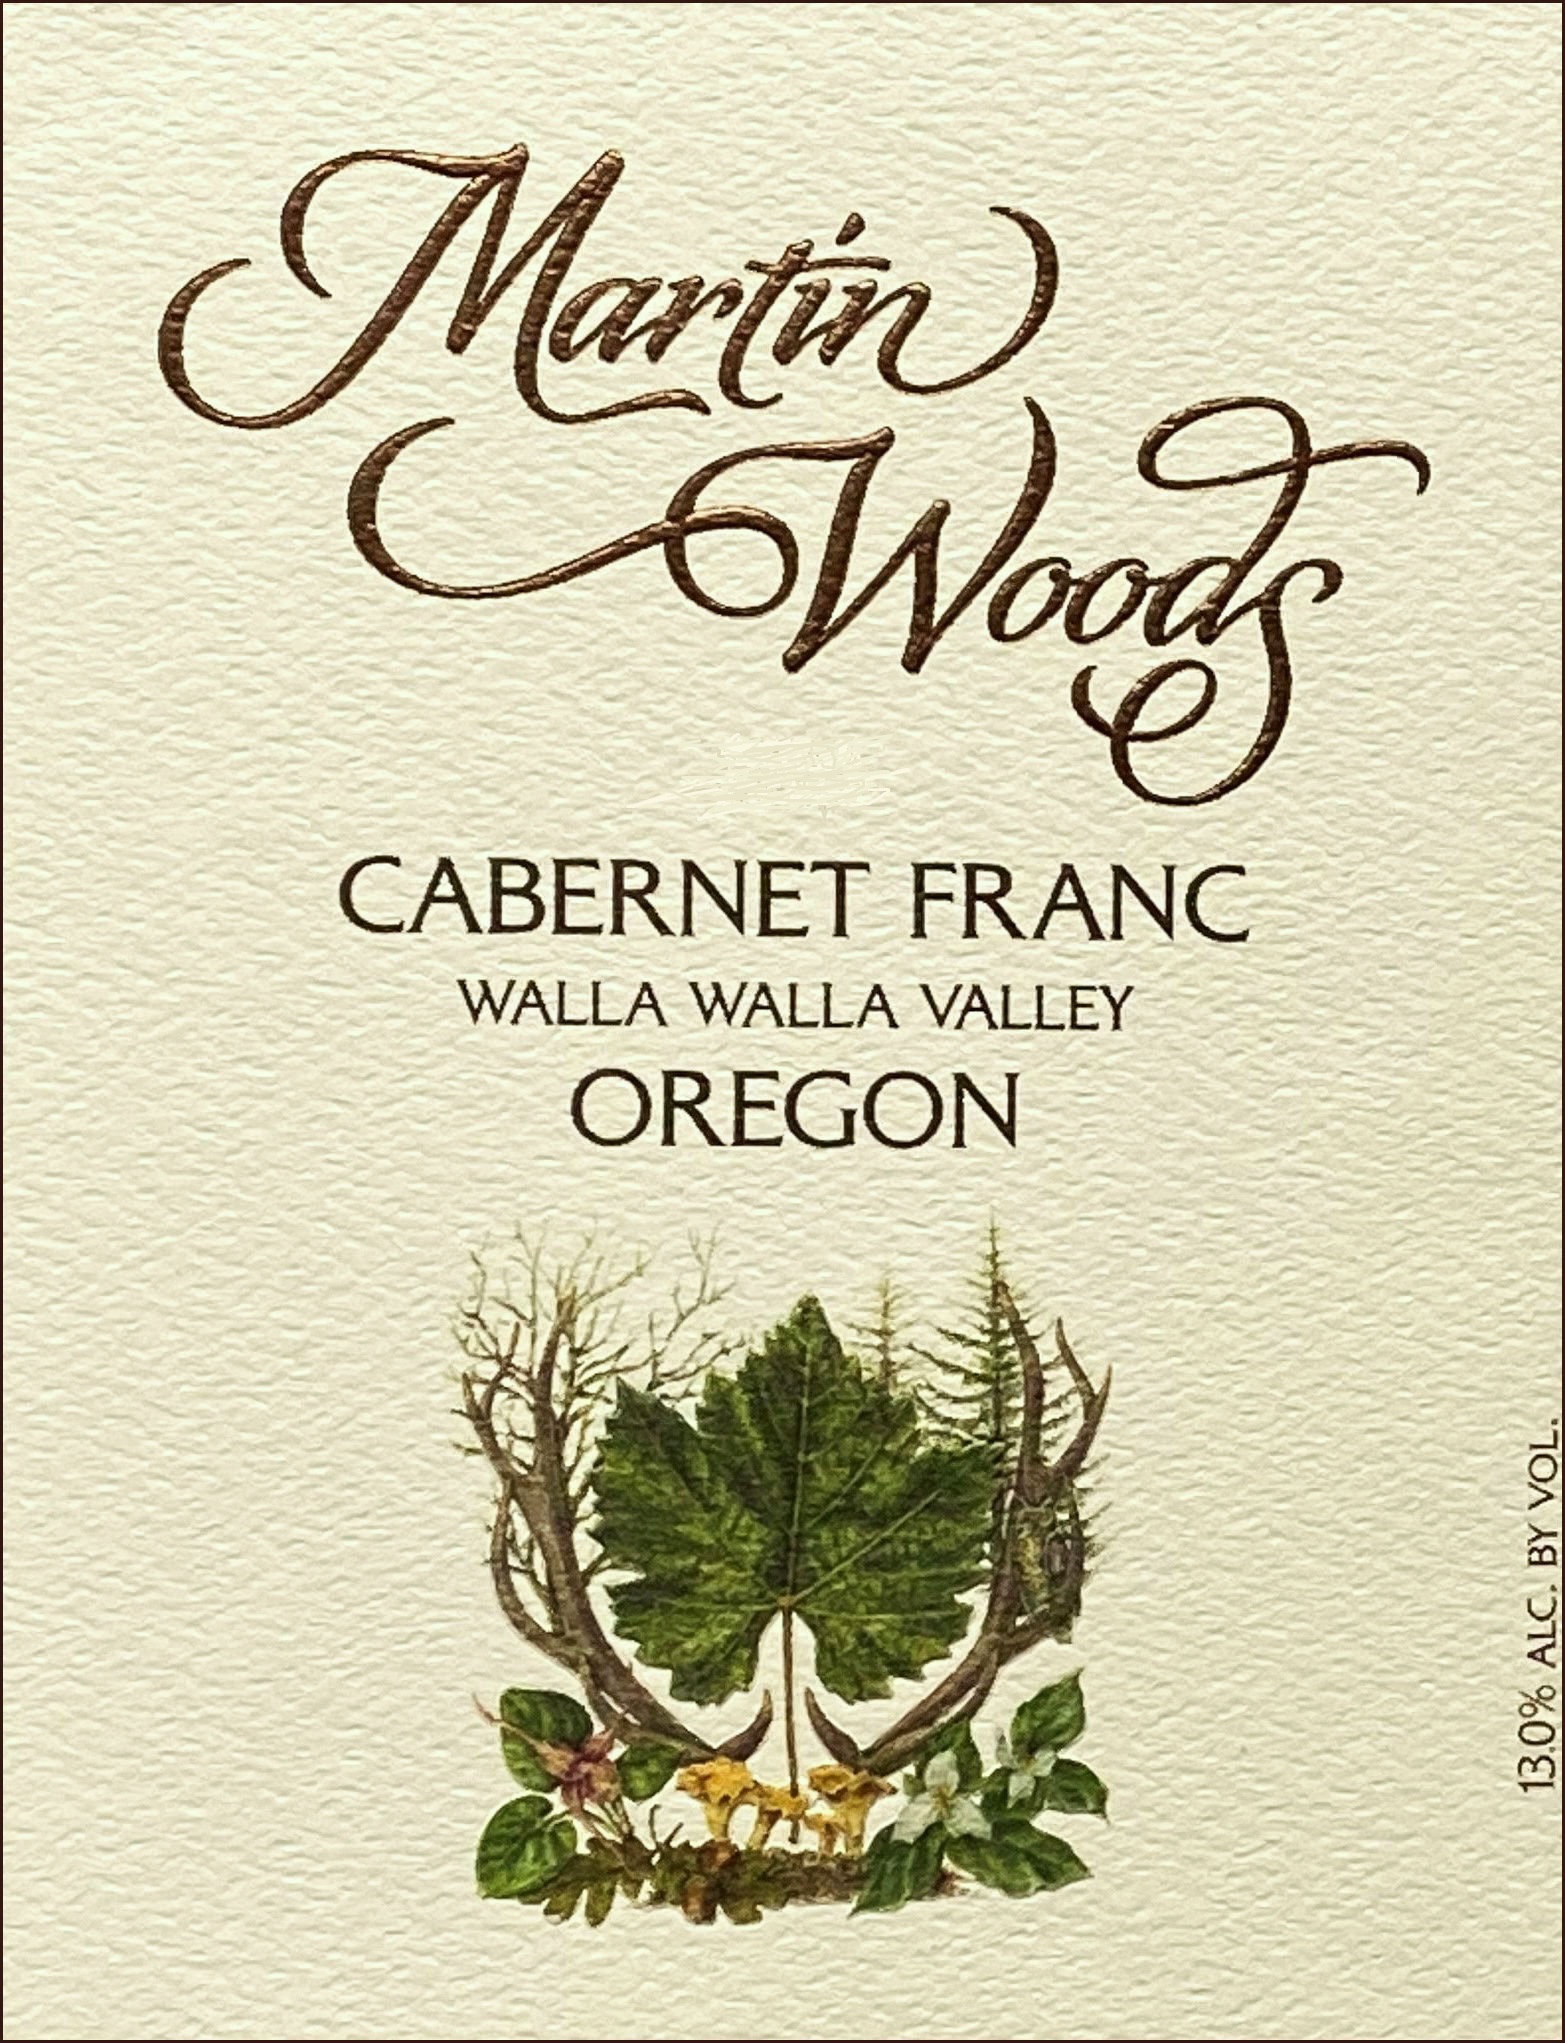 2017 Martin Woods Cabernet Franc Walla Walla Valley - click image for full description